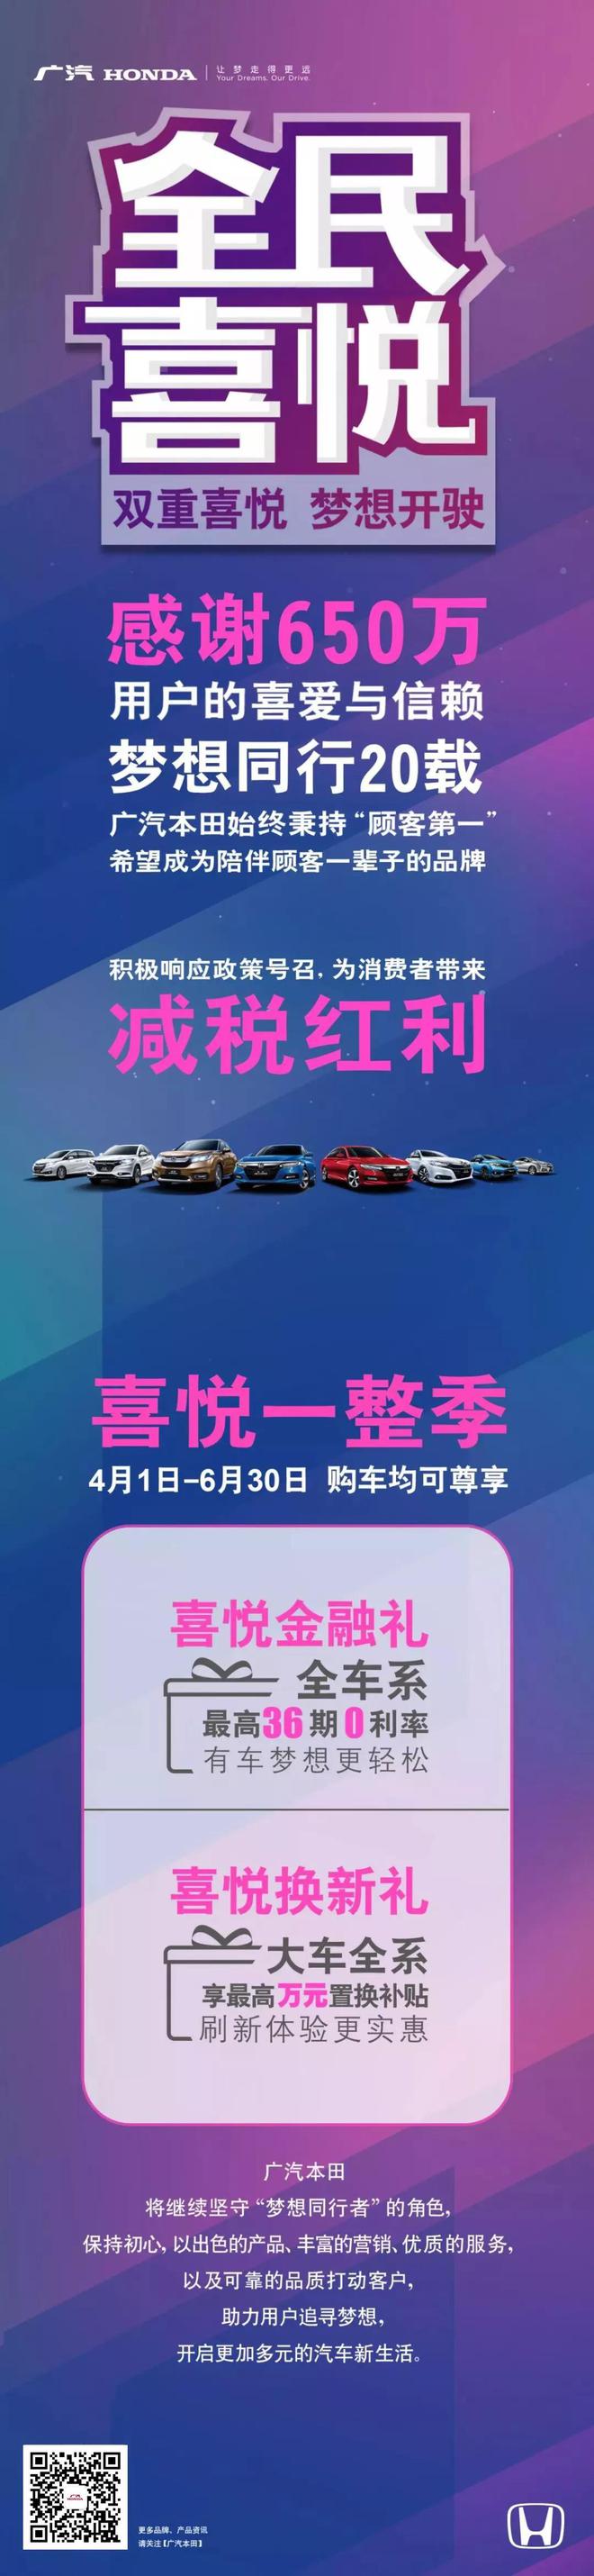 广汽本田为21款车型提供最高万元置换补贴